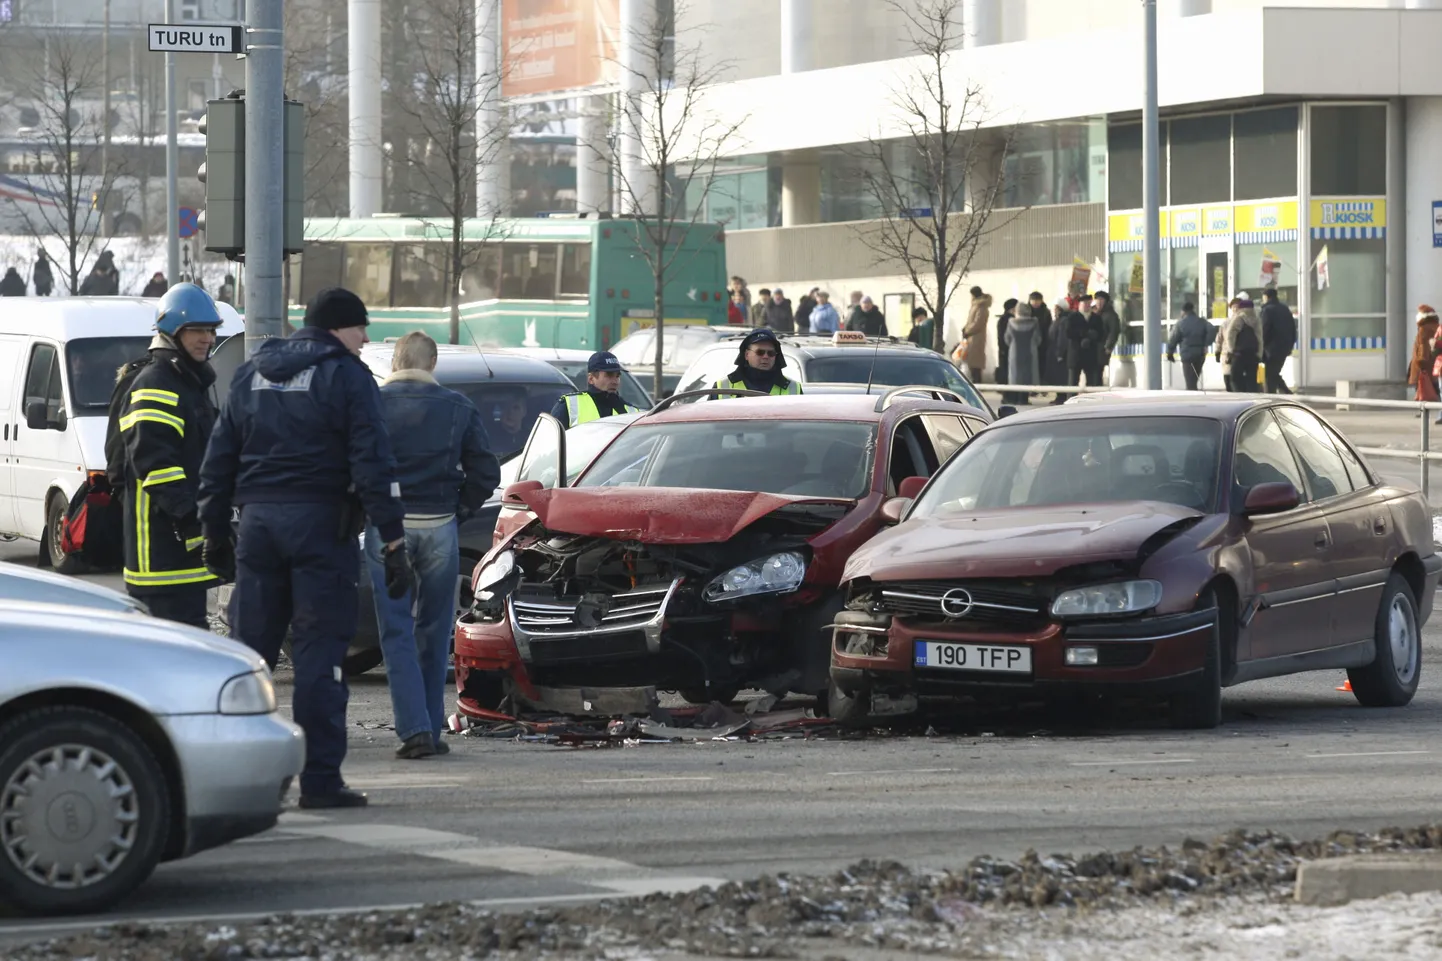 Täna keskpäeval põrkasid Tartu kesklinnas Turu ja Riia tänavate ristmikul kokku Volkswagen ja Opel.